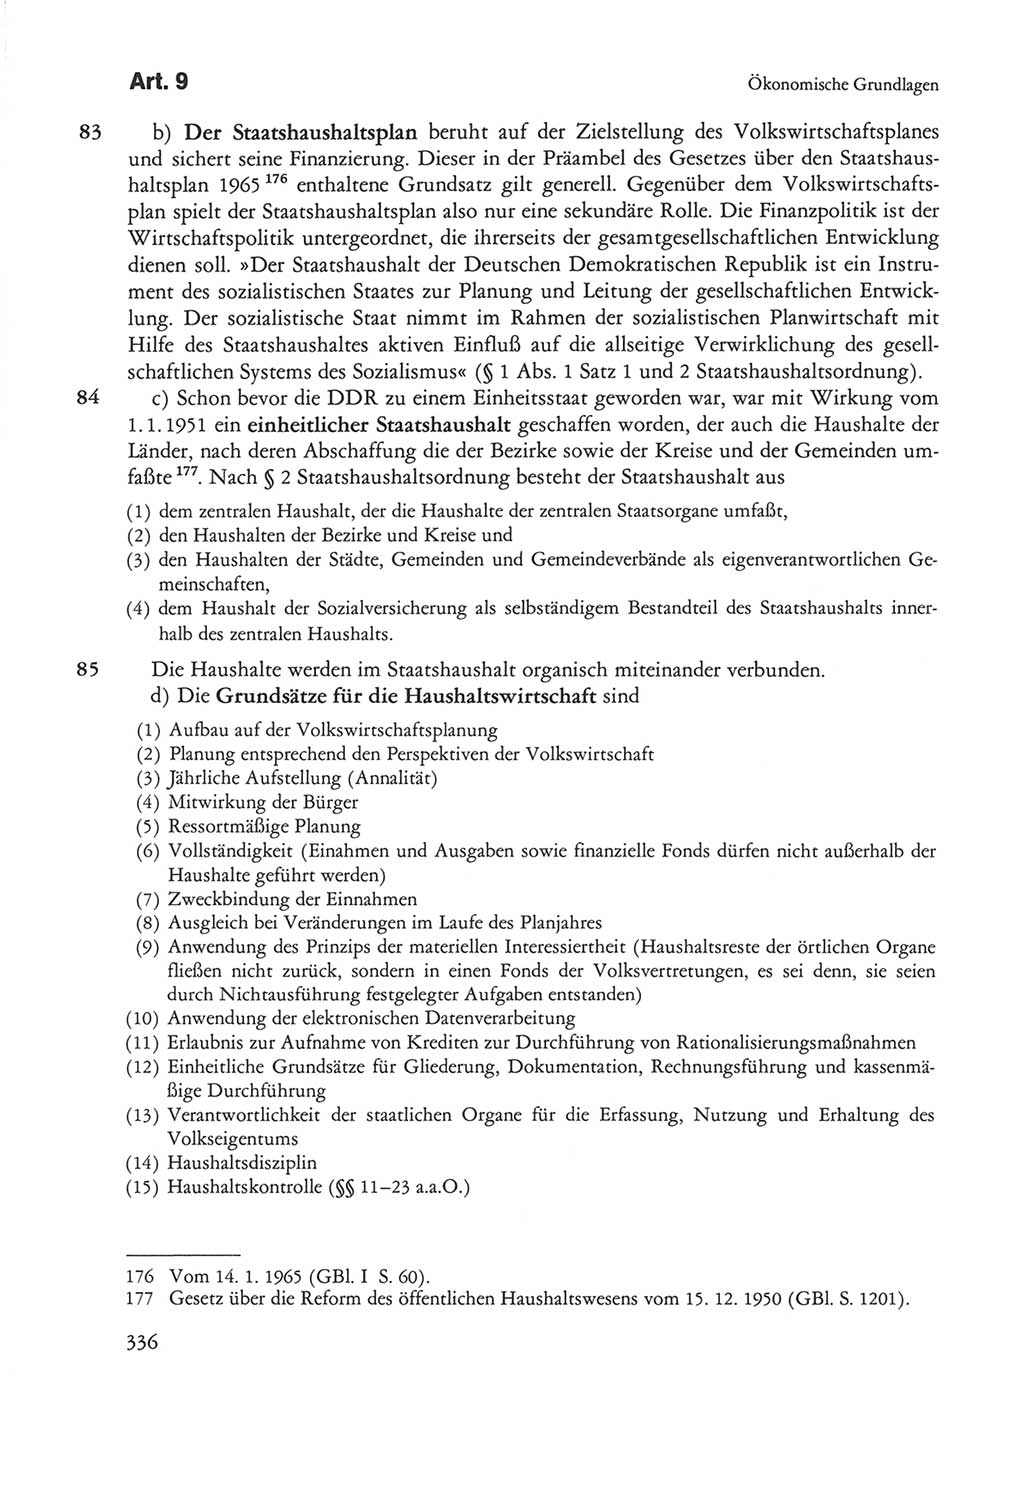 Die sozialistische Verfassung der Deutschen Demokratischen Republik (DDR), Kommentar mit einem Nachtrag 1997, Seite 336 (Soz. Verf. DDR Komm. Nachtr. 1997, S. 336)